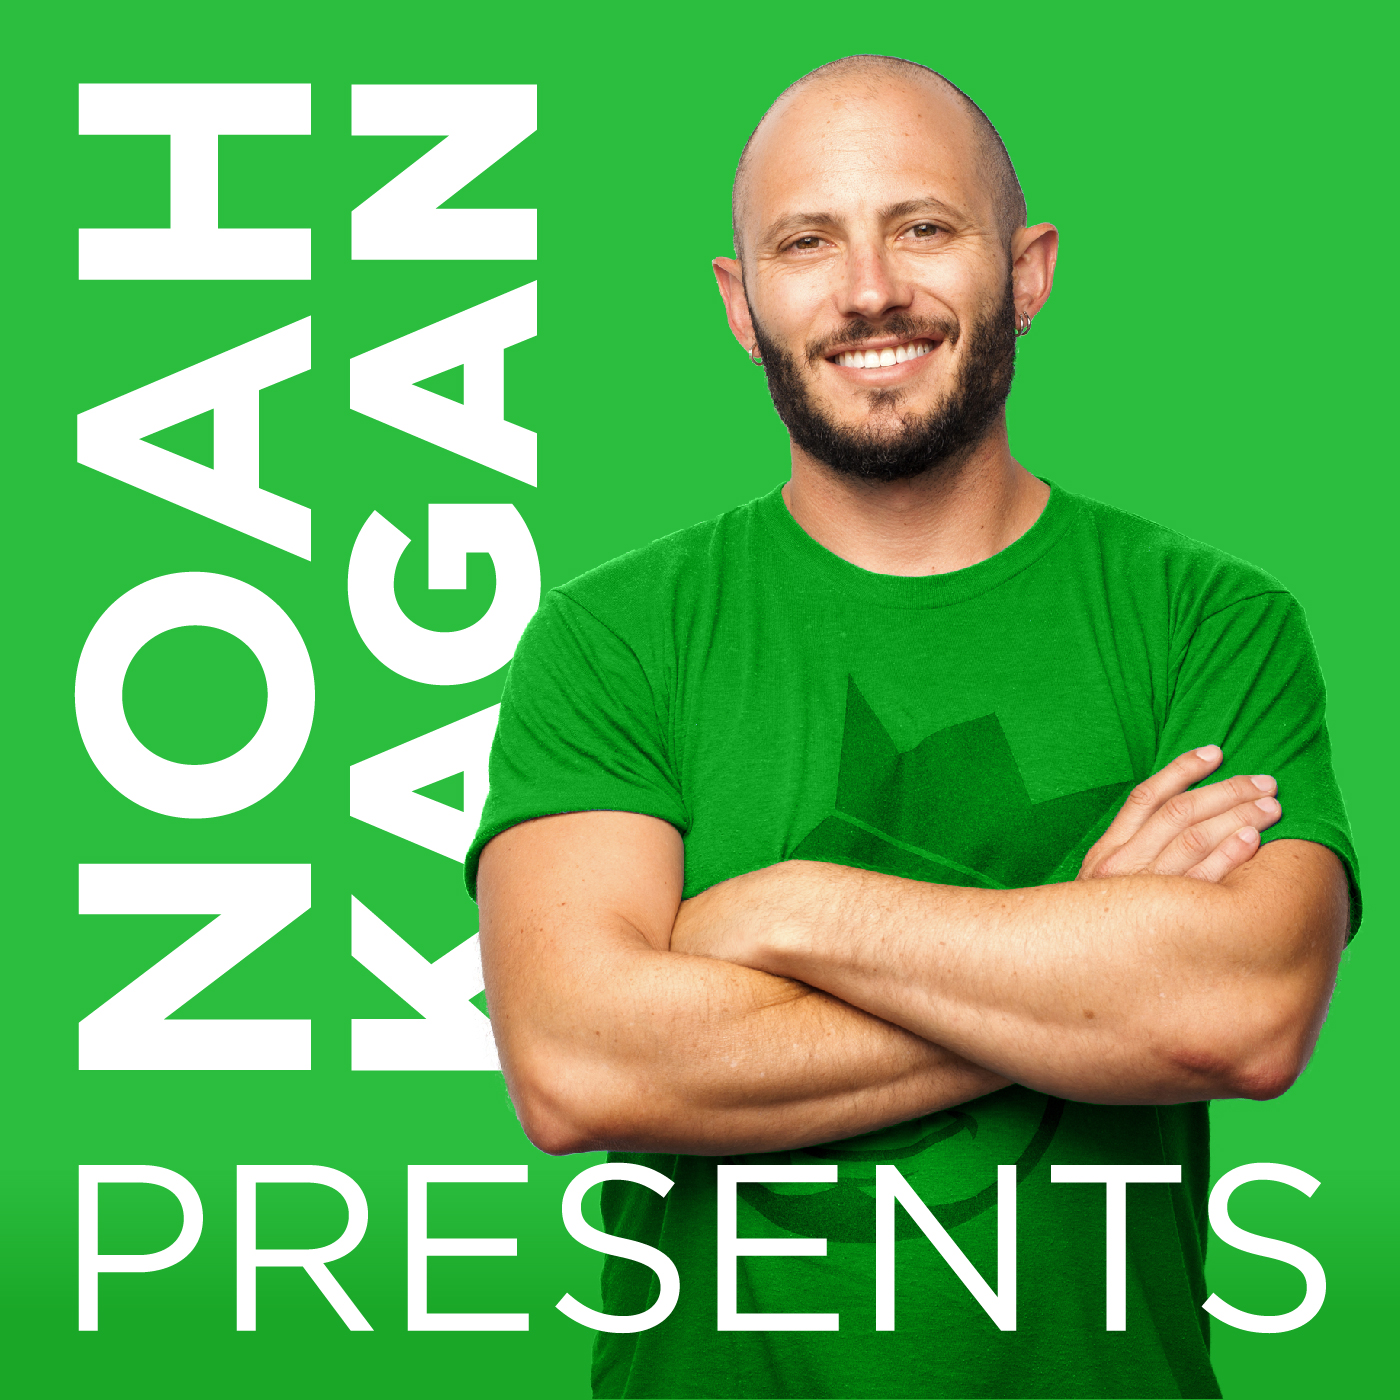 FreeCallsTo.Com Makes Noah Kagan $100-200 Daily